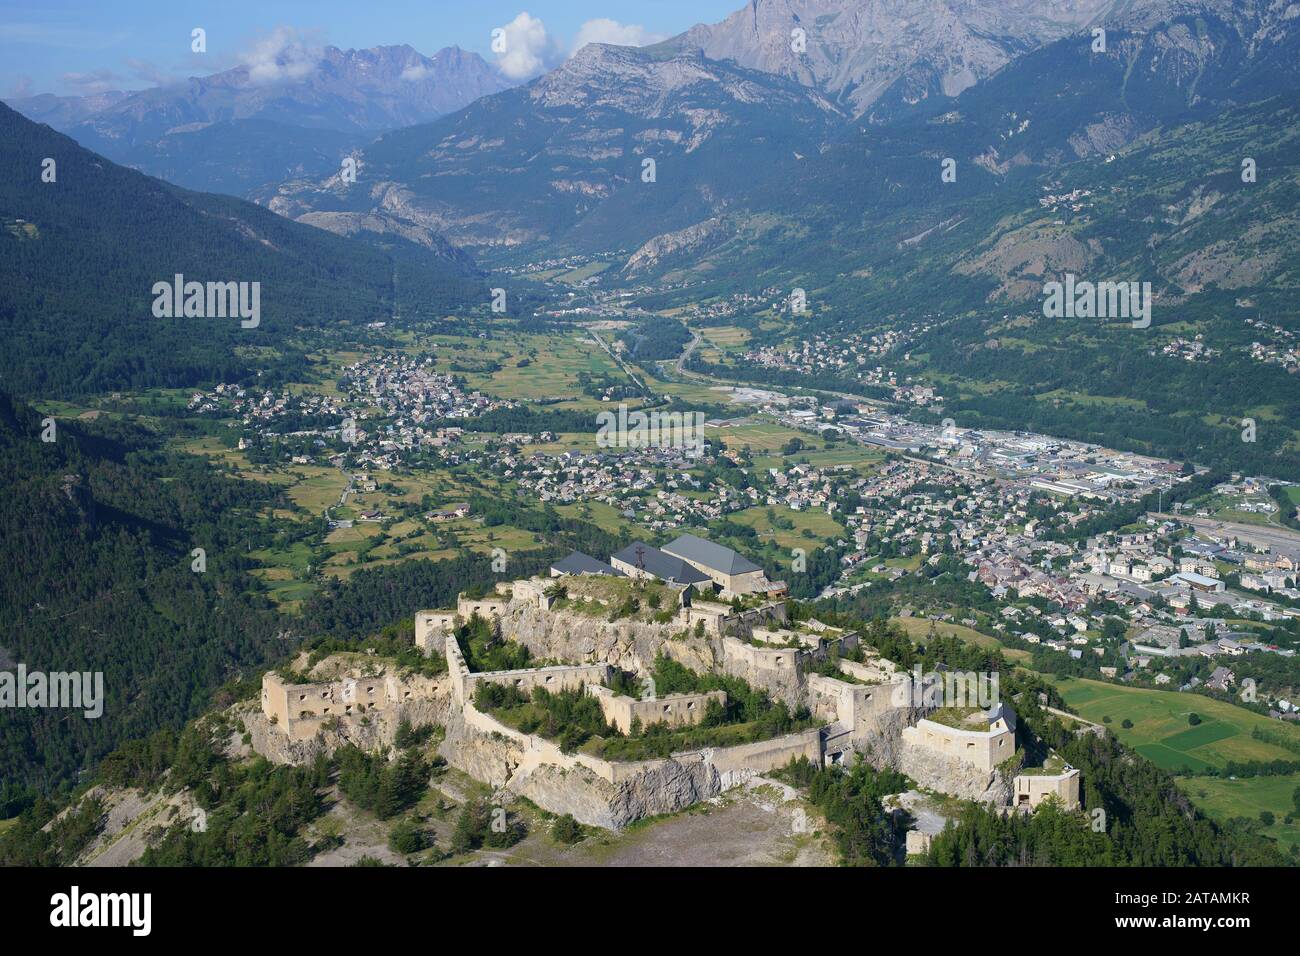 LUFTAUFNAHME. Fort du Randouillet, strategisch hoch über dem Durance Valley gelegen. Briançon, Hautes-Alpes, Frankreich. Stockfoto